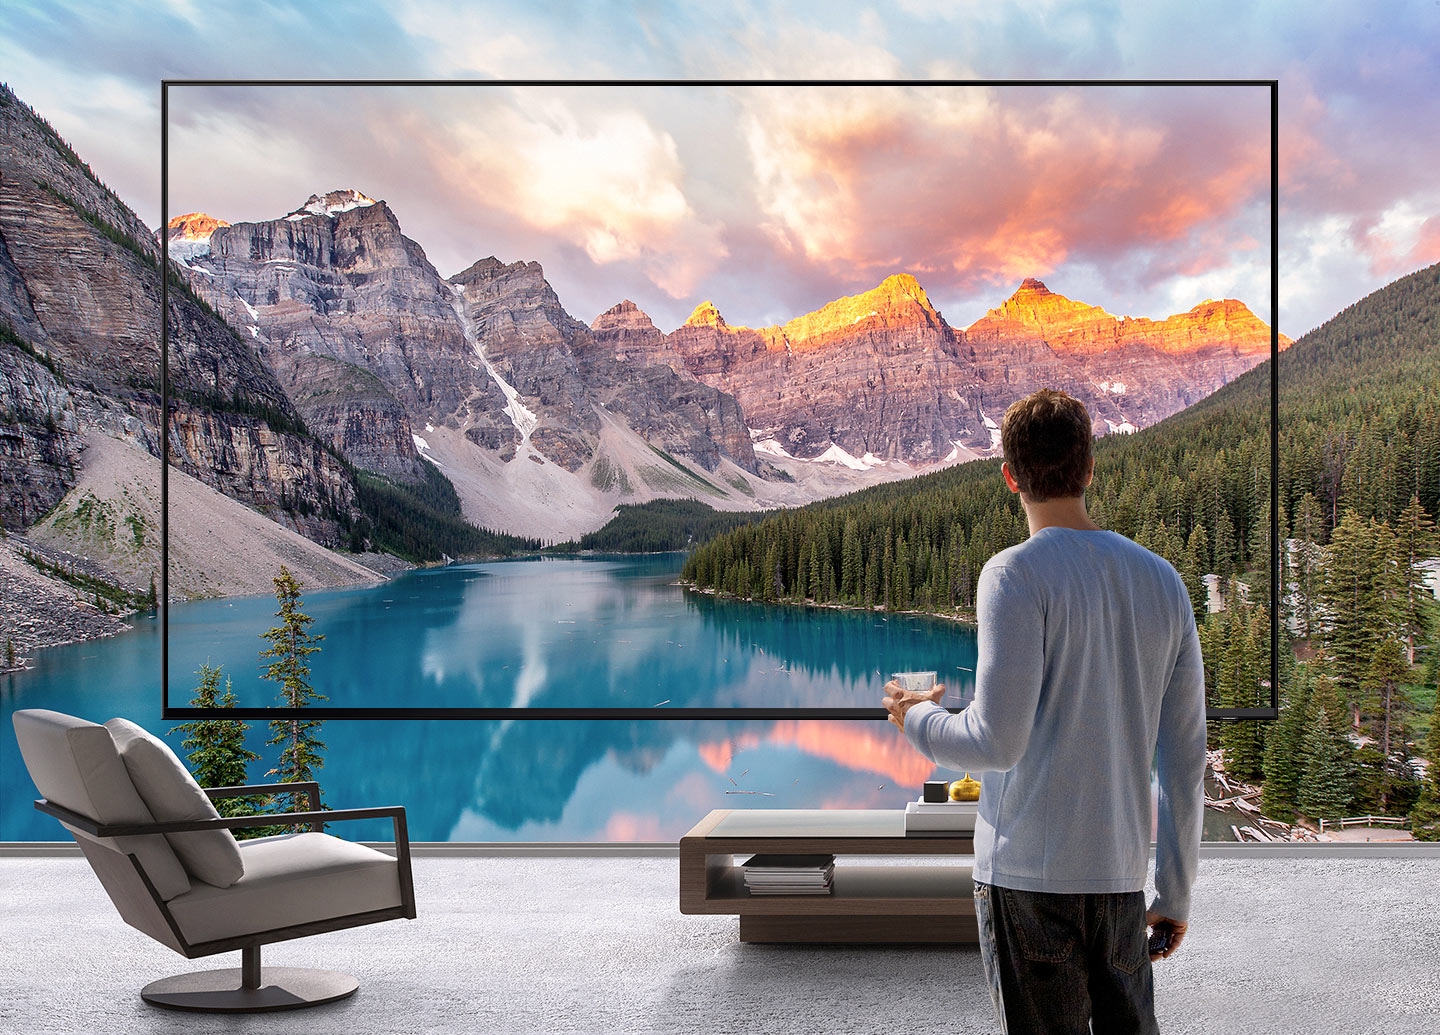 하나의 초대형 TV앞에 커피잔을 들고 있는 남자가 서 있고, TV 화면 너머까지 펼쳐지는 산과 강의 풍경 장면을 보여줍니다.